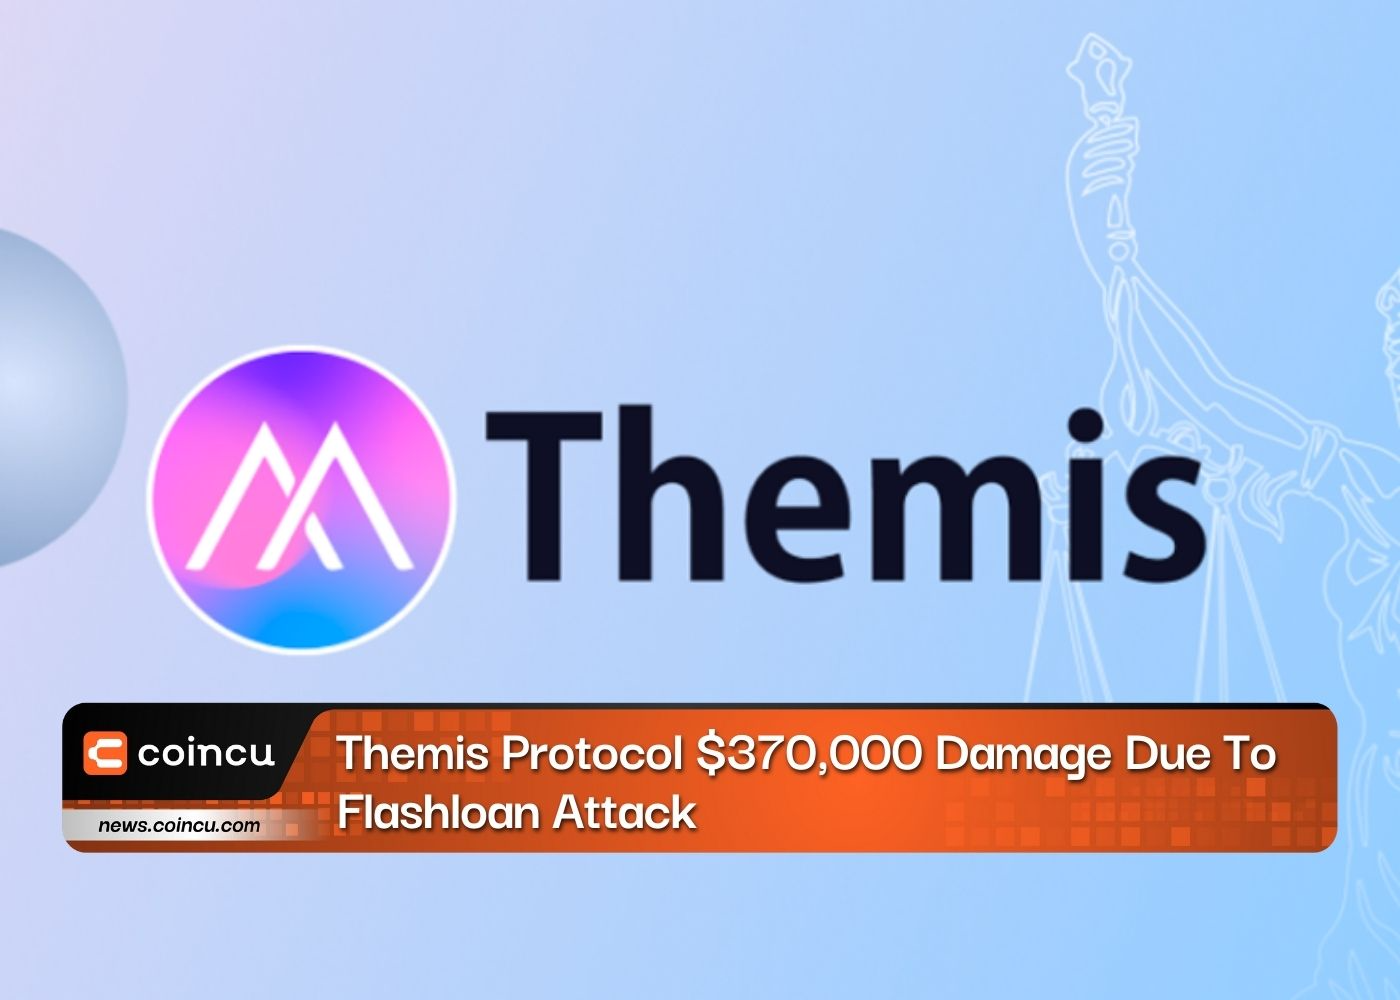 Themis Protocol Flashloan Saldırısı Nedeniyle 370,000 Dolarlık Hasar